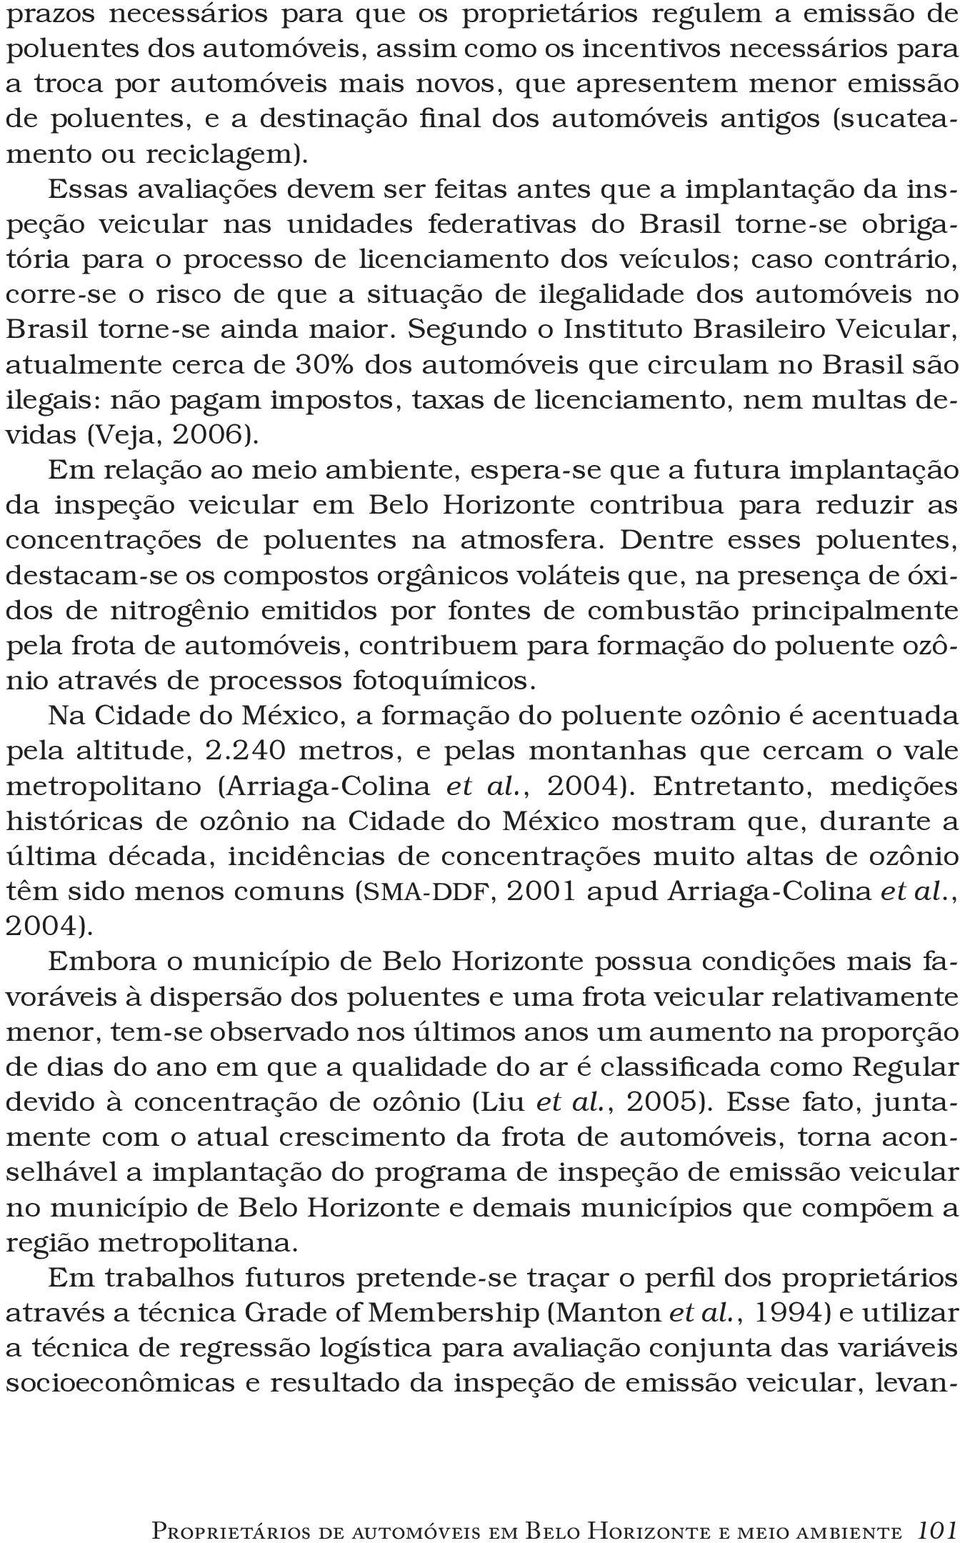 Essas avaliações devem ser feitas antes que a implantação da inspeção veicular nas unidades federativas do Brasil torne-se obrigatória para o processo de licenciamento dos veículos; caso contrário,